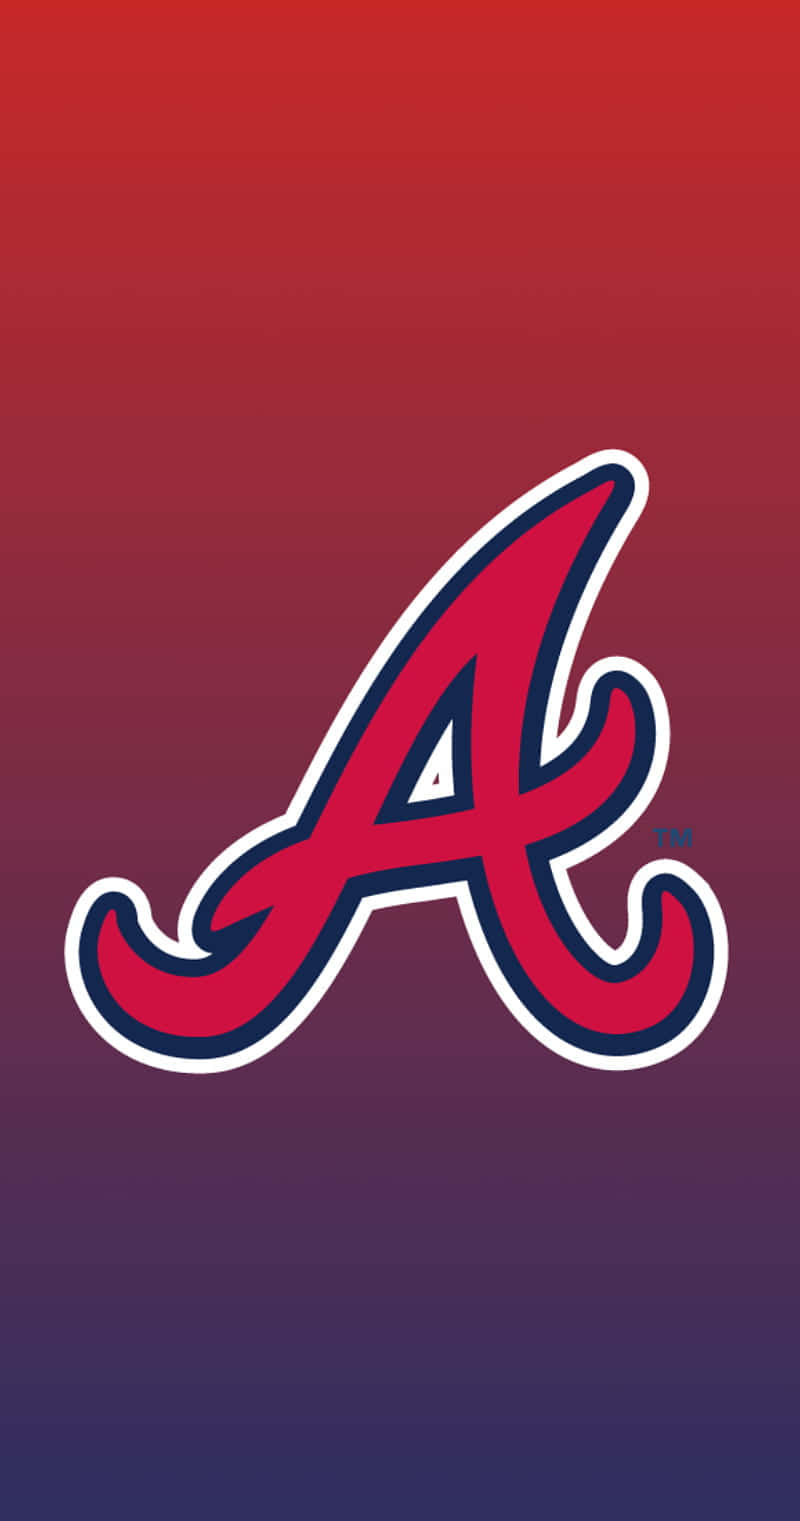 Logotipode Los Atlanta Braves Sobre Un Fondo Rojo Y Azul. Fondo de pantalla